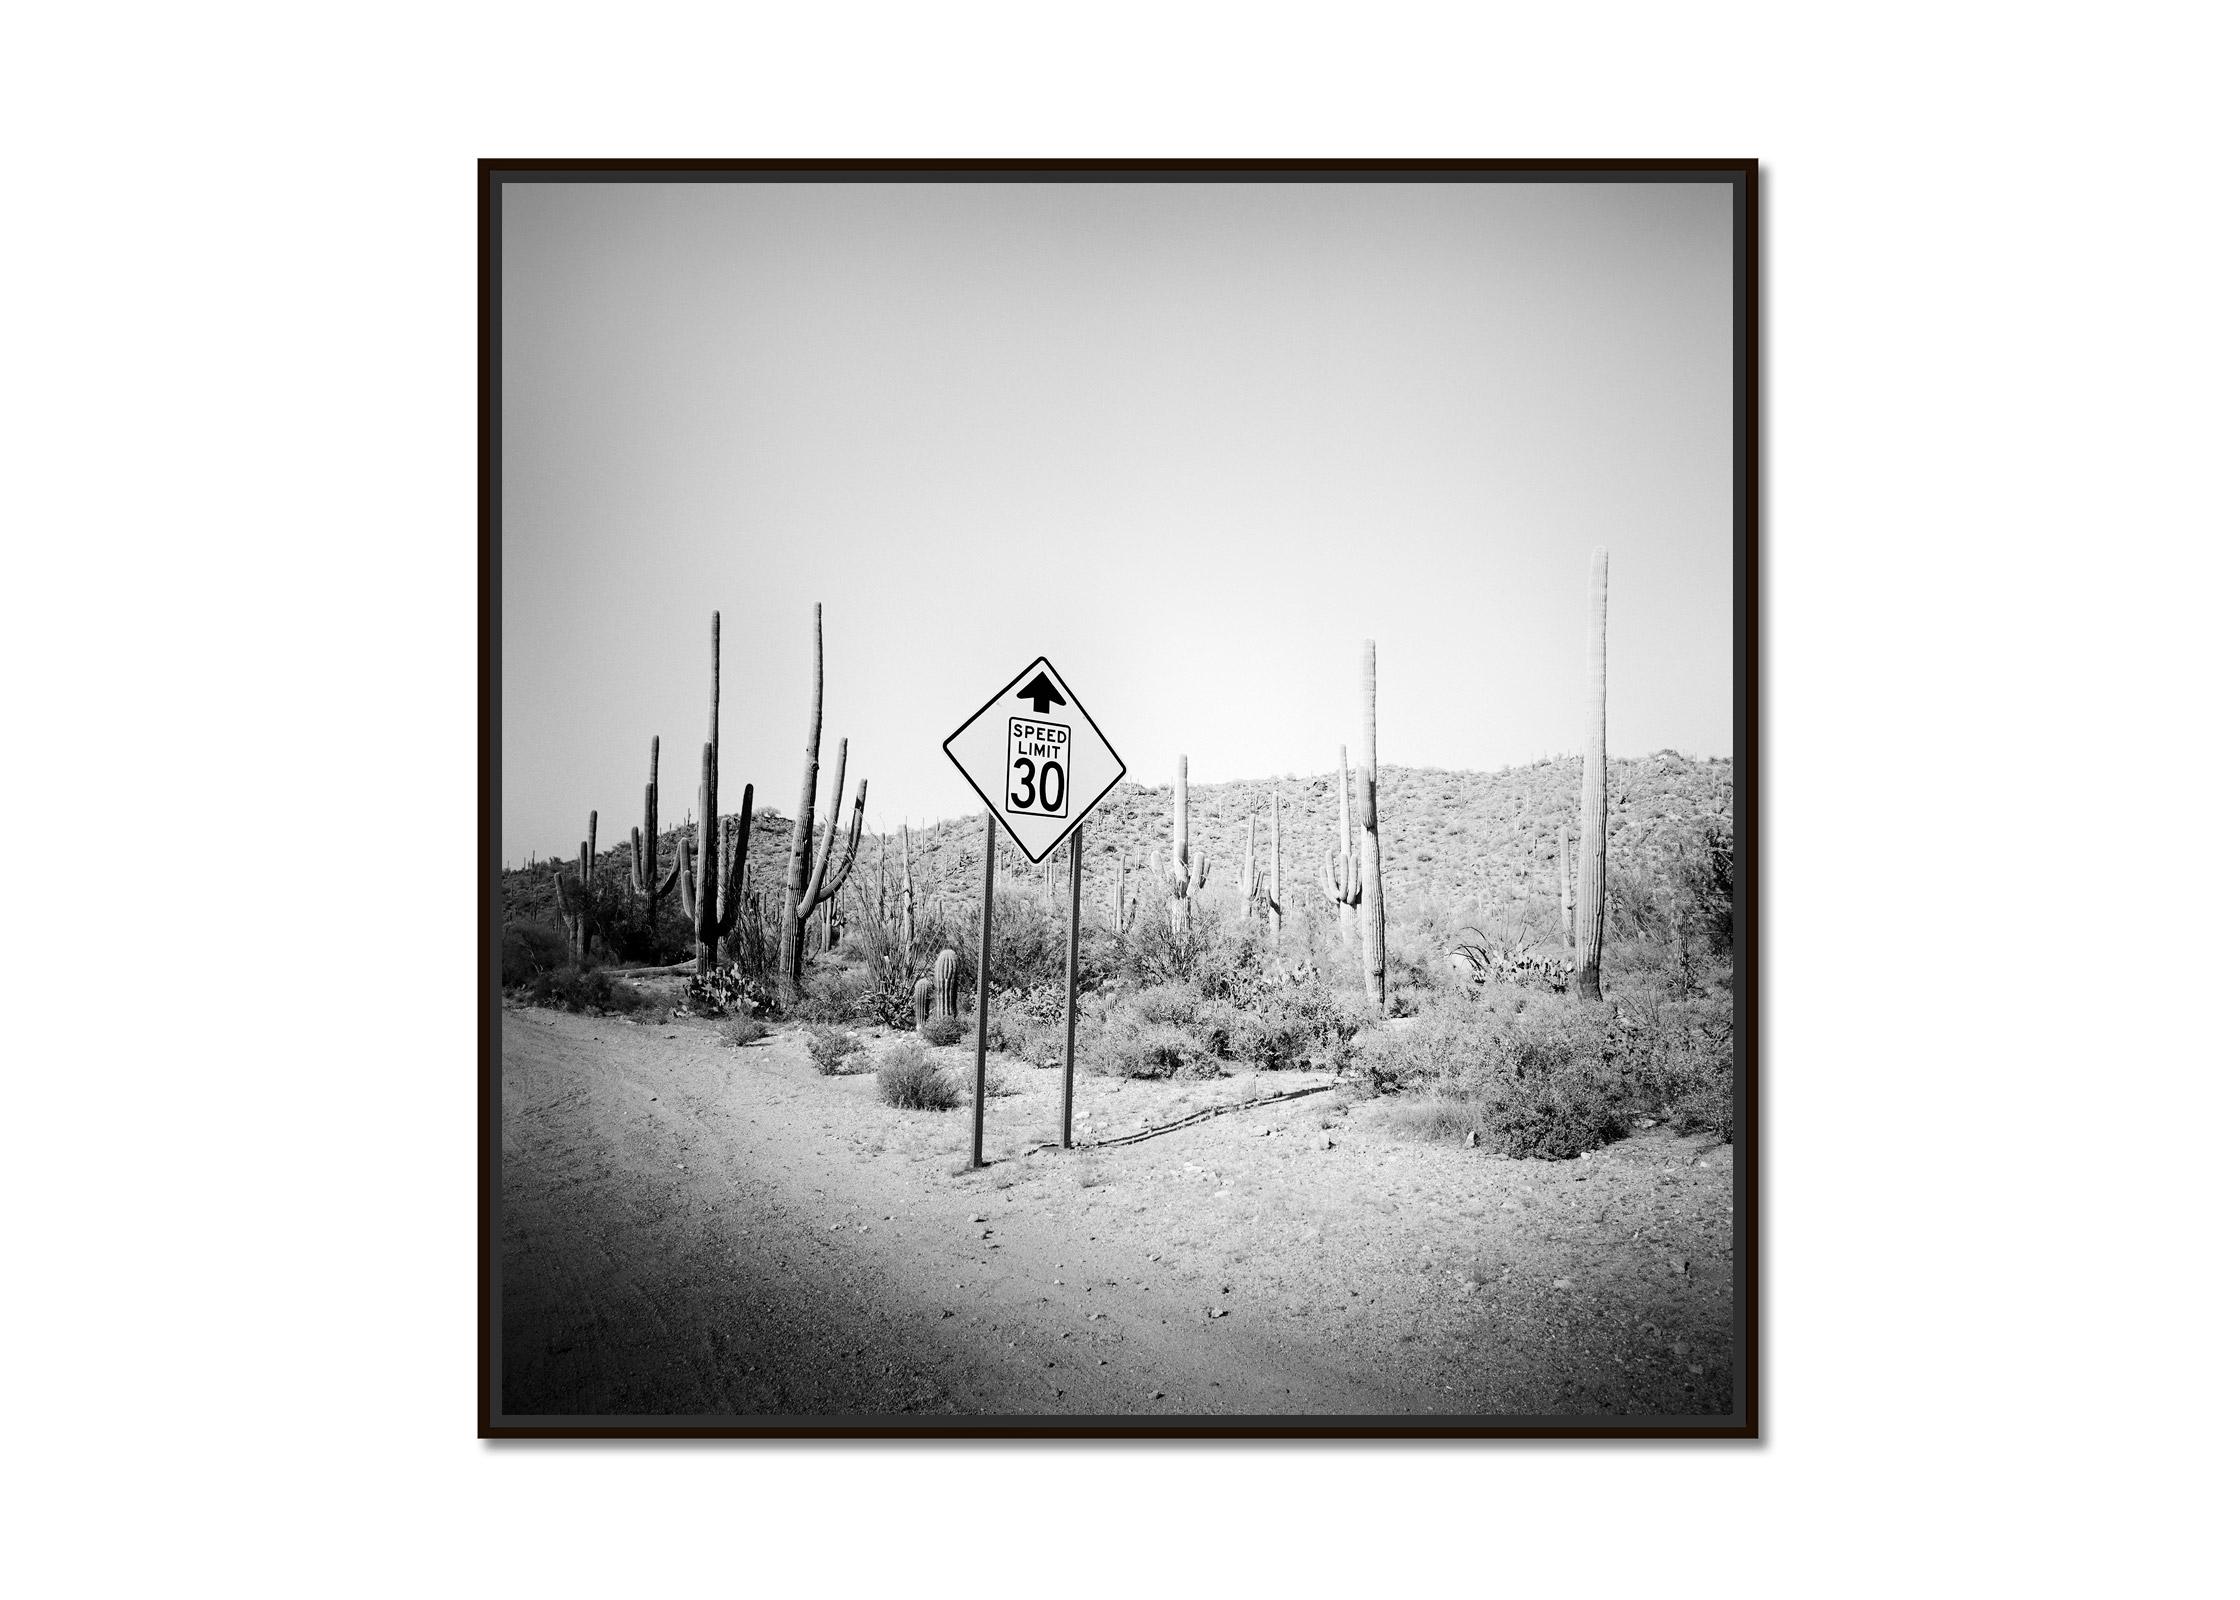 Limite de vitesse, désert, cactus, Arizona, photographie de paysage artistique en noir et blanc - Photograph de Gerald Berghammer